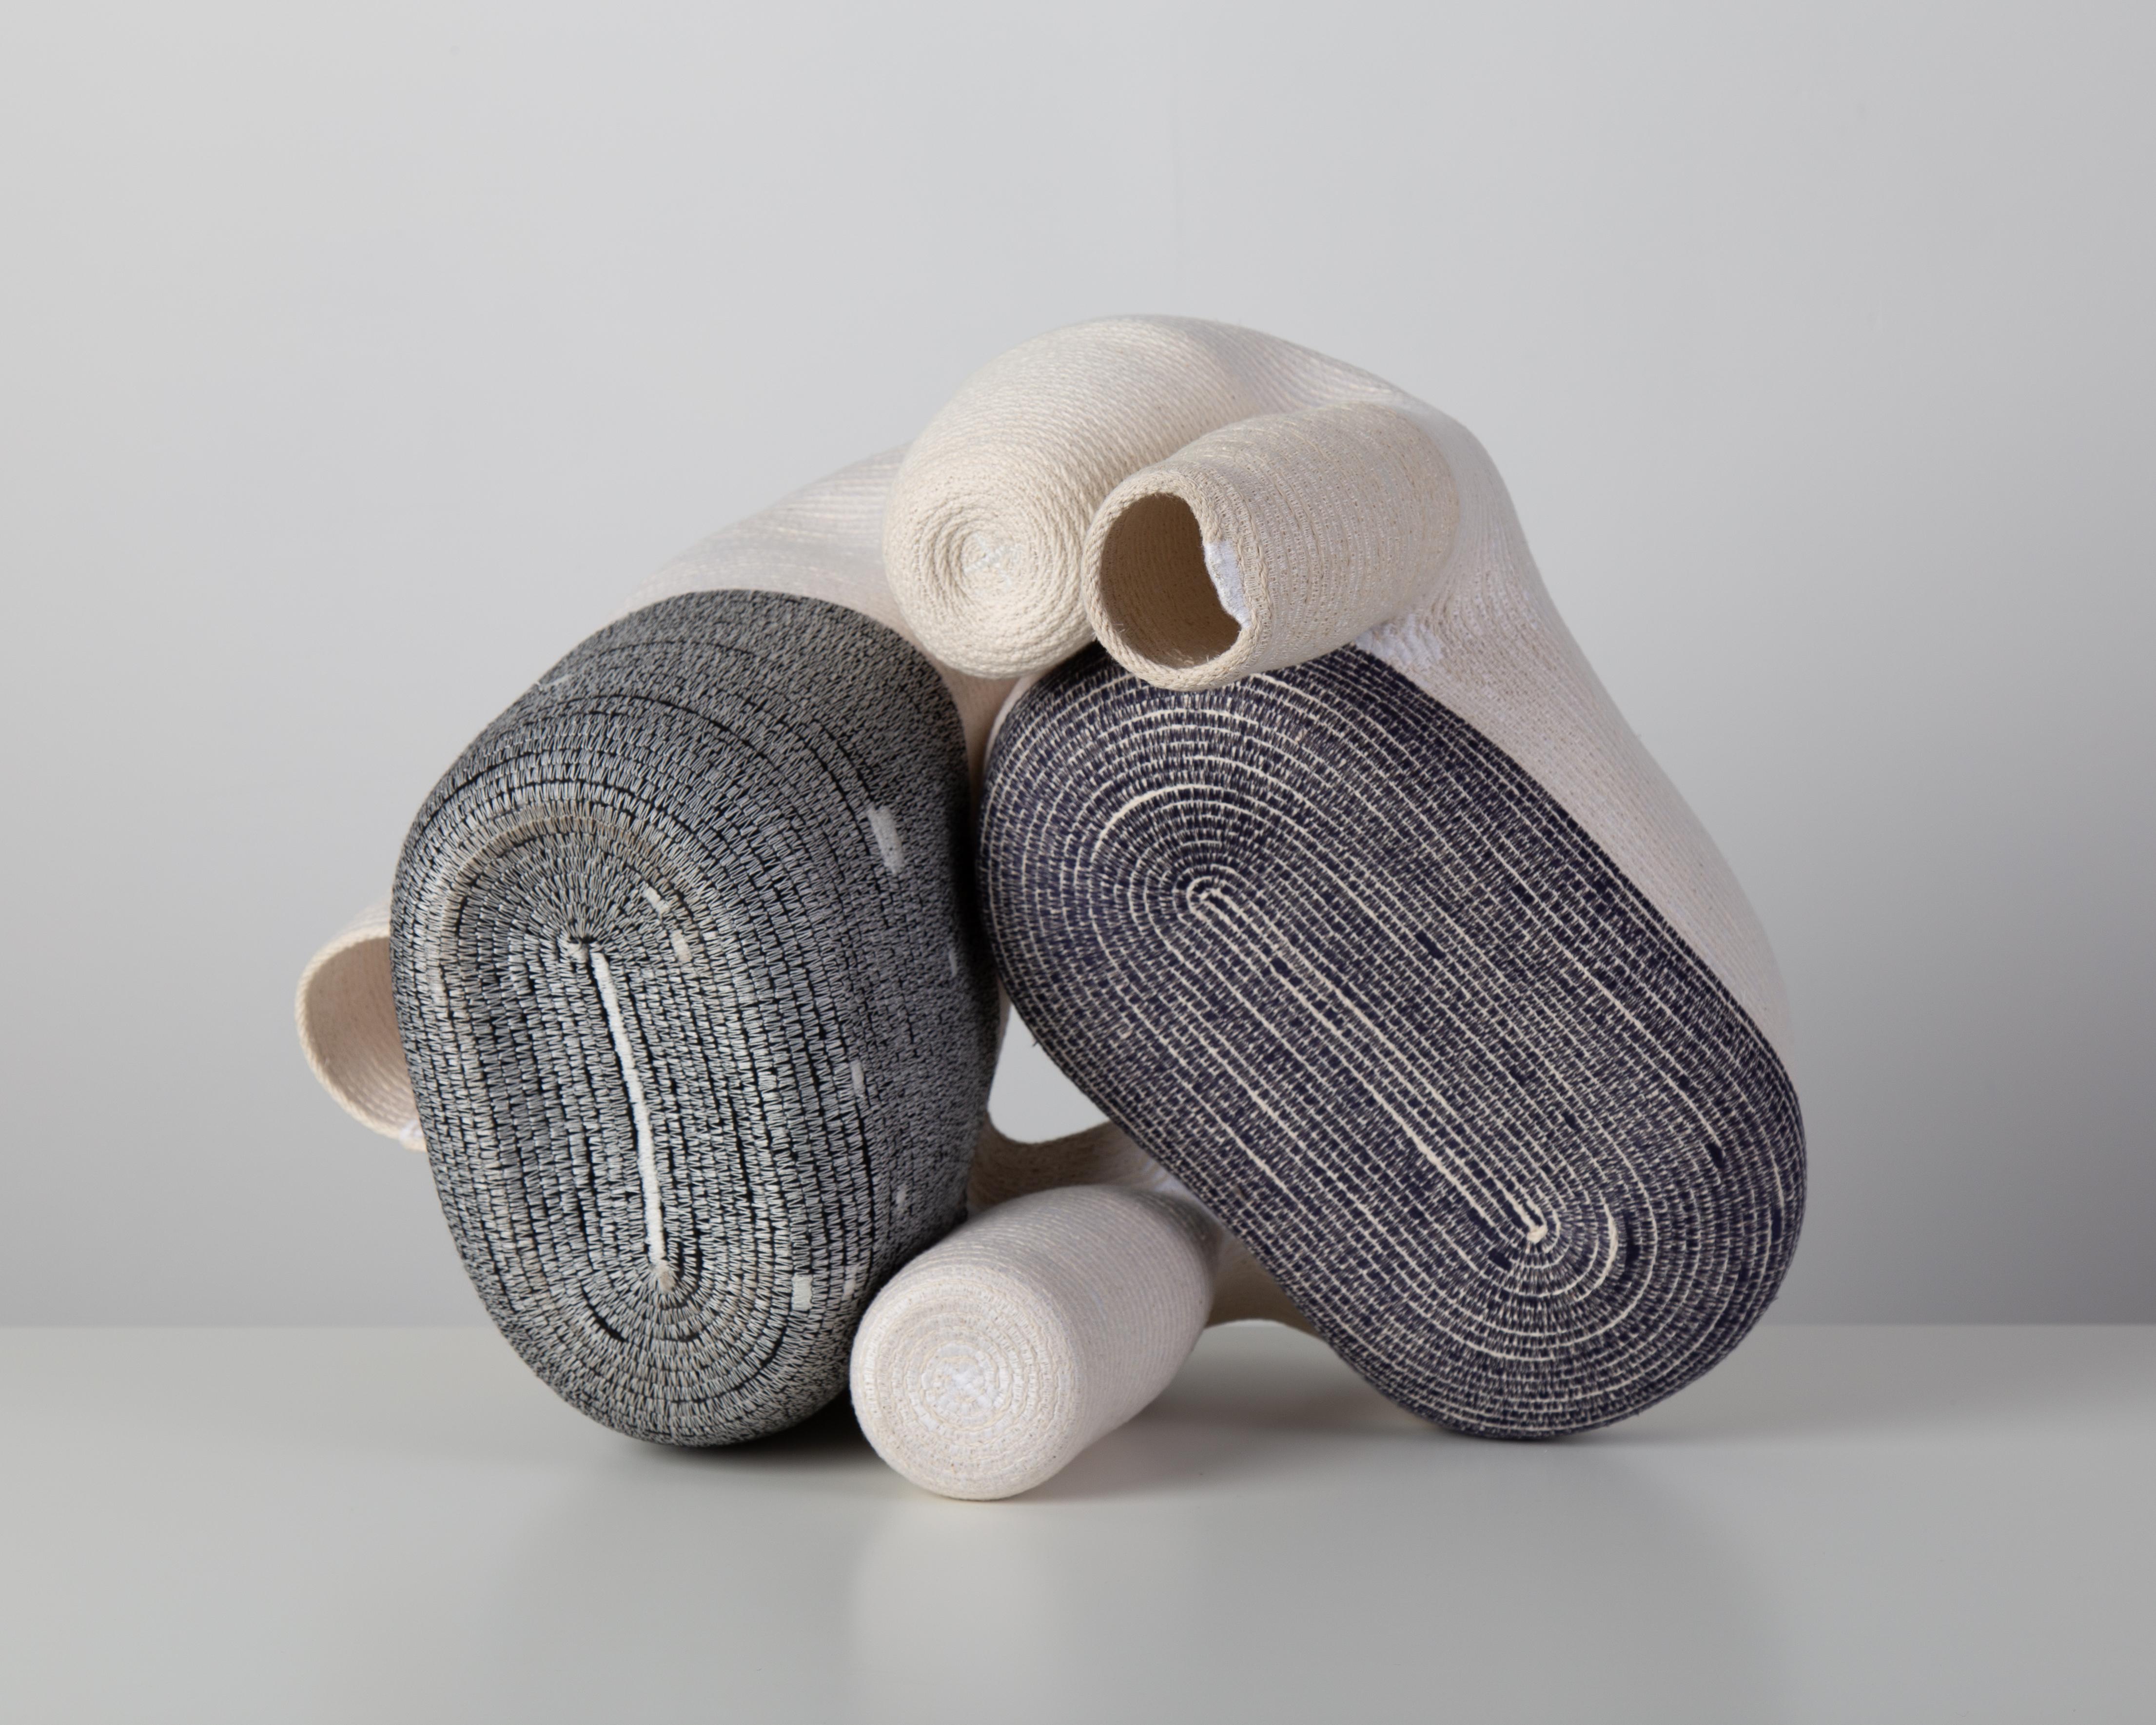 « Vase sans titre de 15 cm » Sculpture en fibre de coton enroulée et cousue de Doug Johnston 4